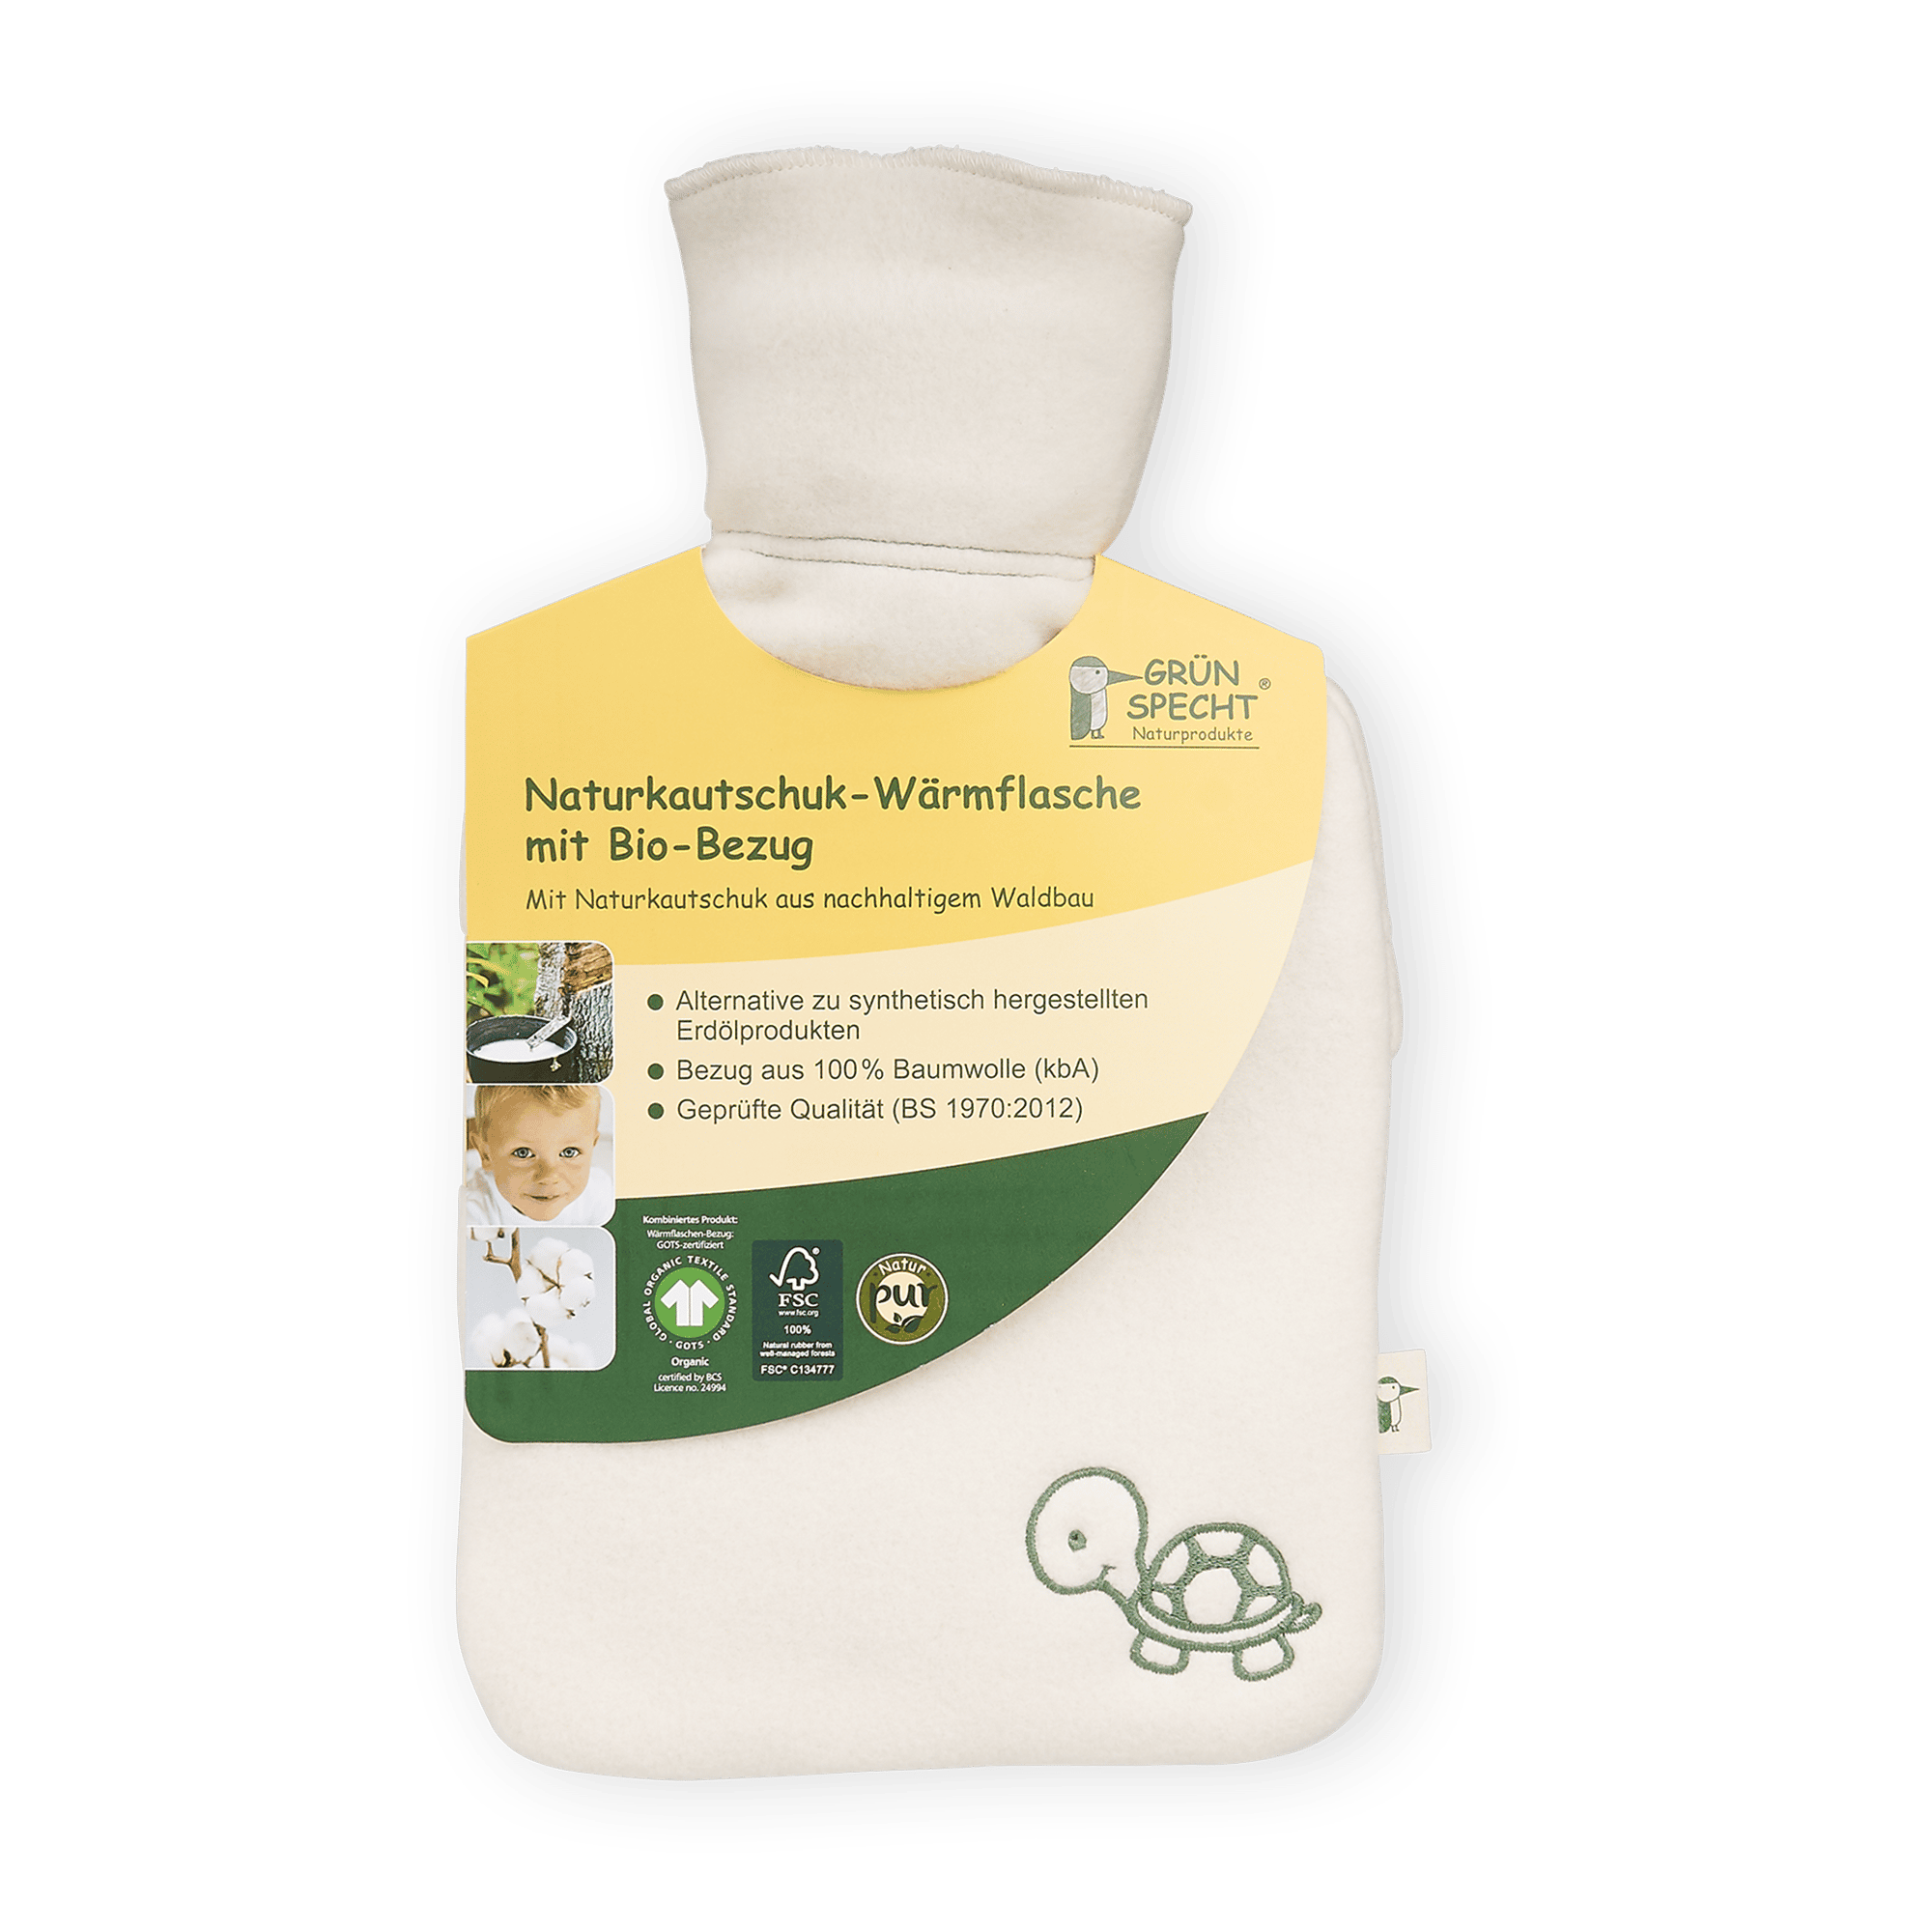 Naturkautschuk Wärmflasche klein mit Bio-Bezug GRÜNSPECHT Weiß Weiß 2000584466009 1